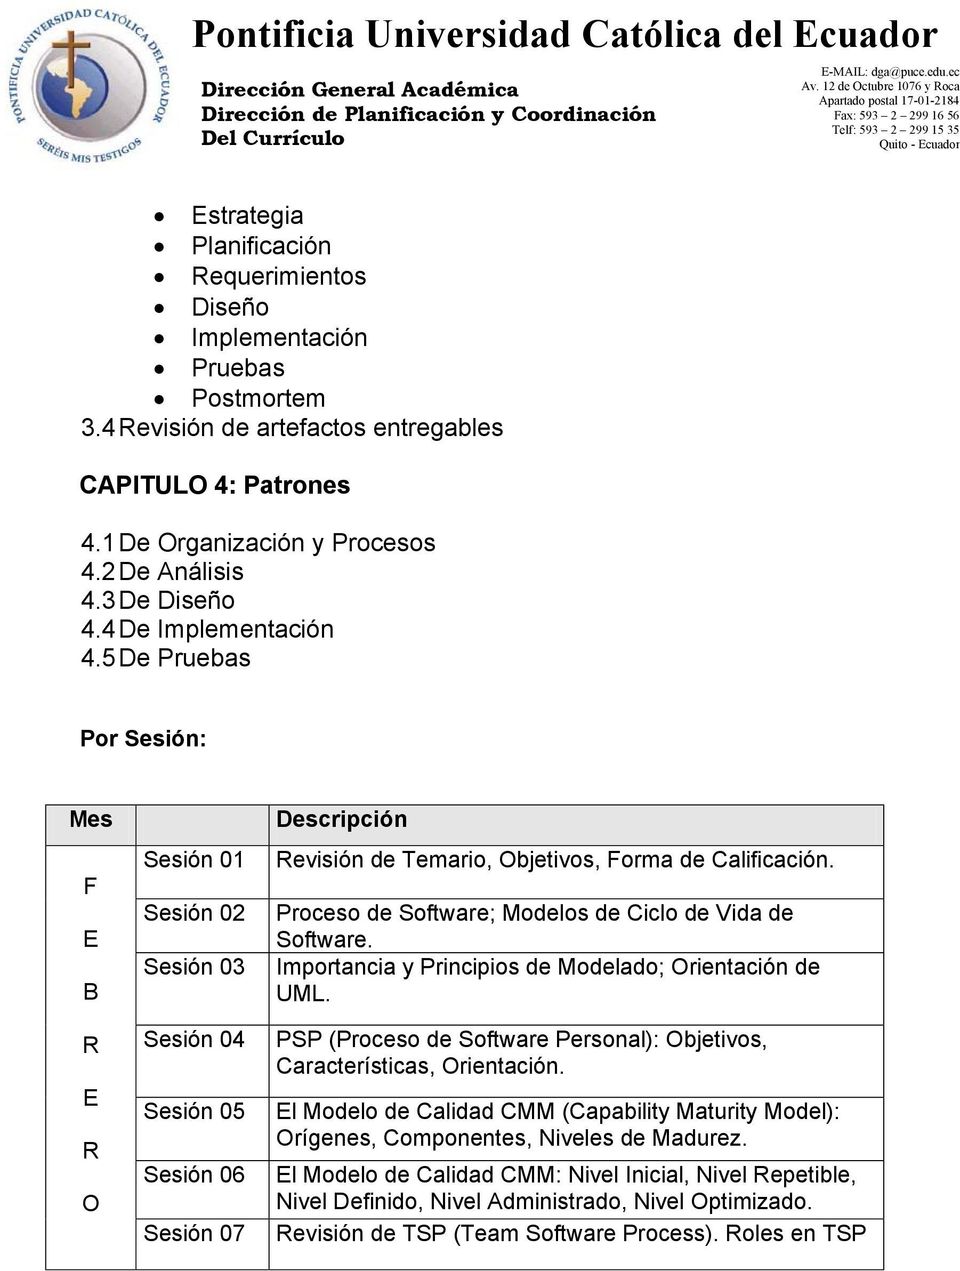 Proceso de Software; Modelos de Ciclo de Vida de Software. Importancia y Principios de Modelado; rientación de UML. PSP (Proceso de Software Personal): bjetivos, Características, rientación.